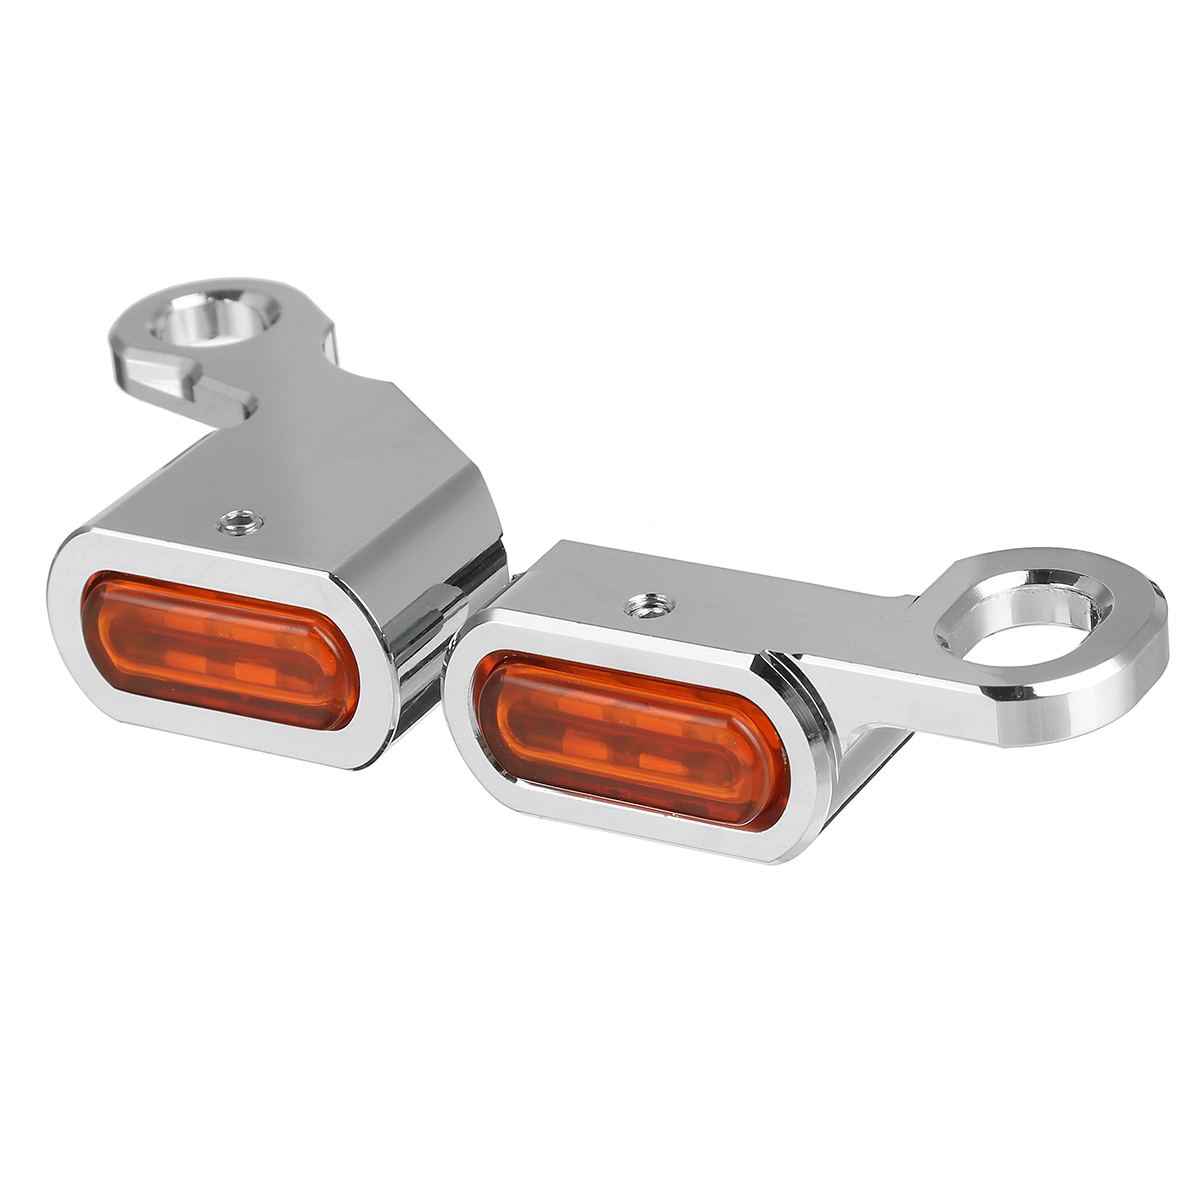 2Pcs Motorcycle Amber LED Mini Turn Signal Indicator Running Light Lamp for Harley - Auto GoShop